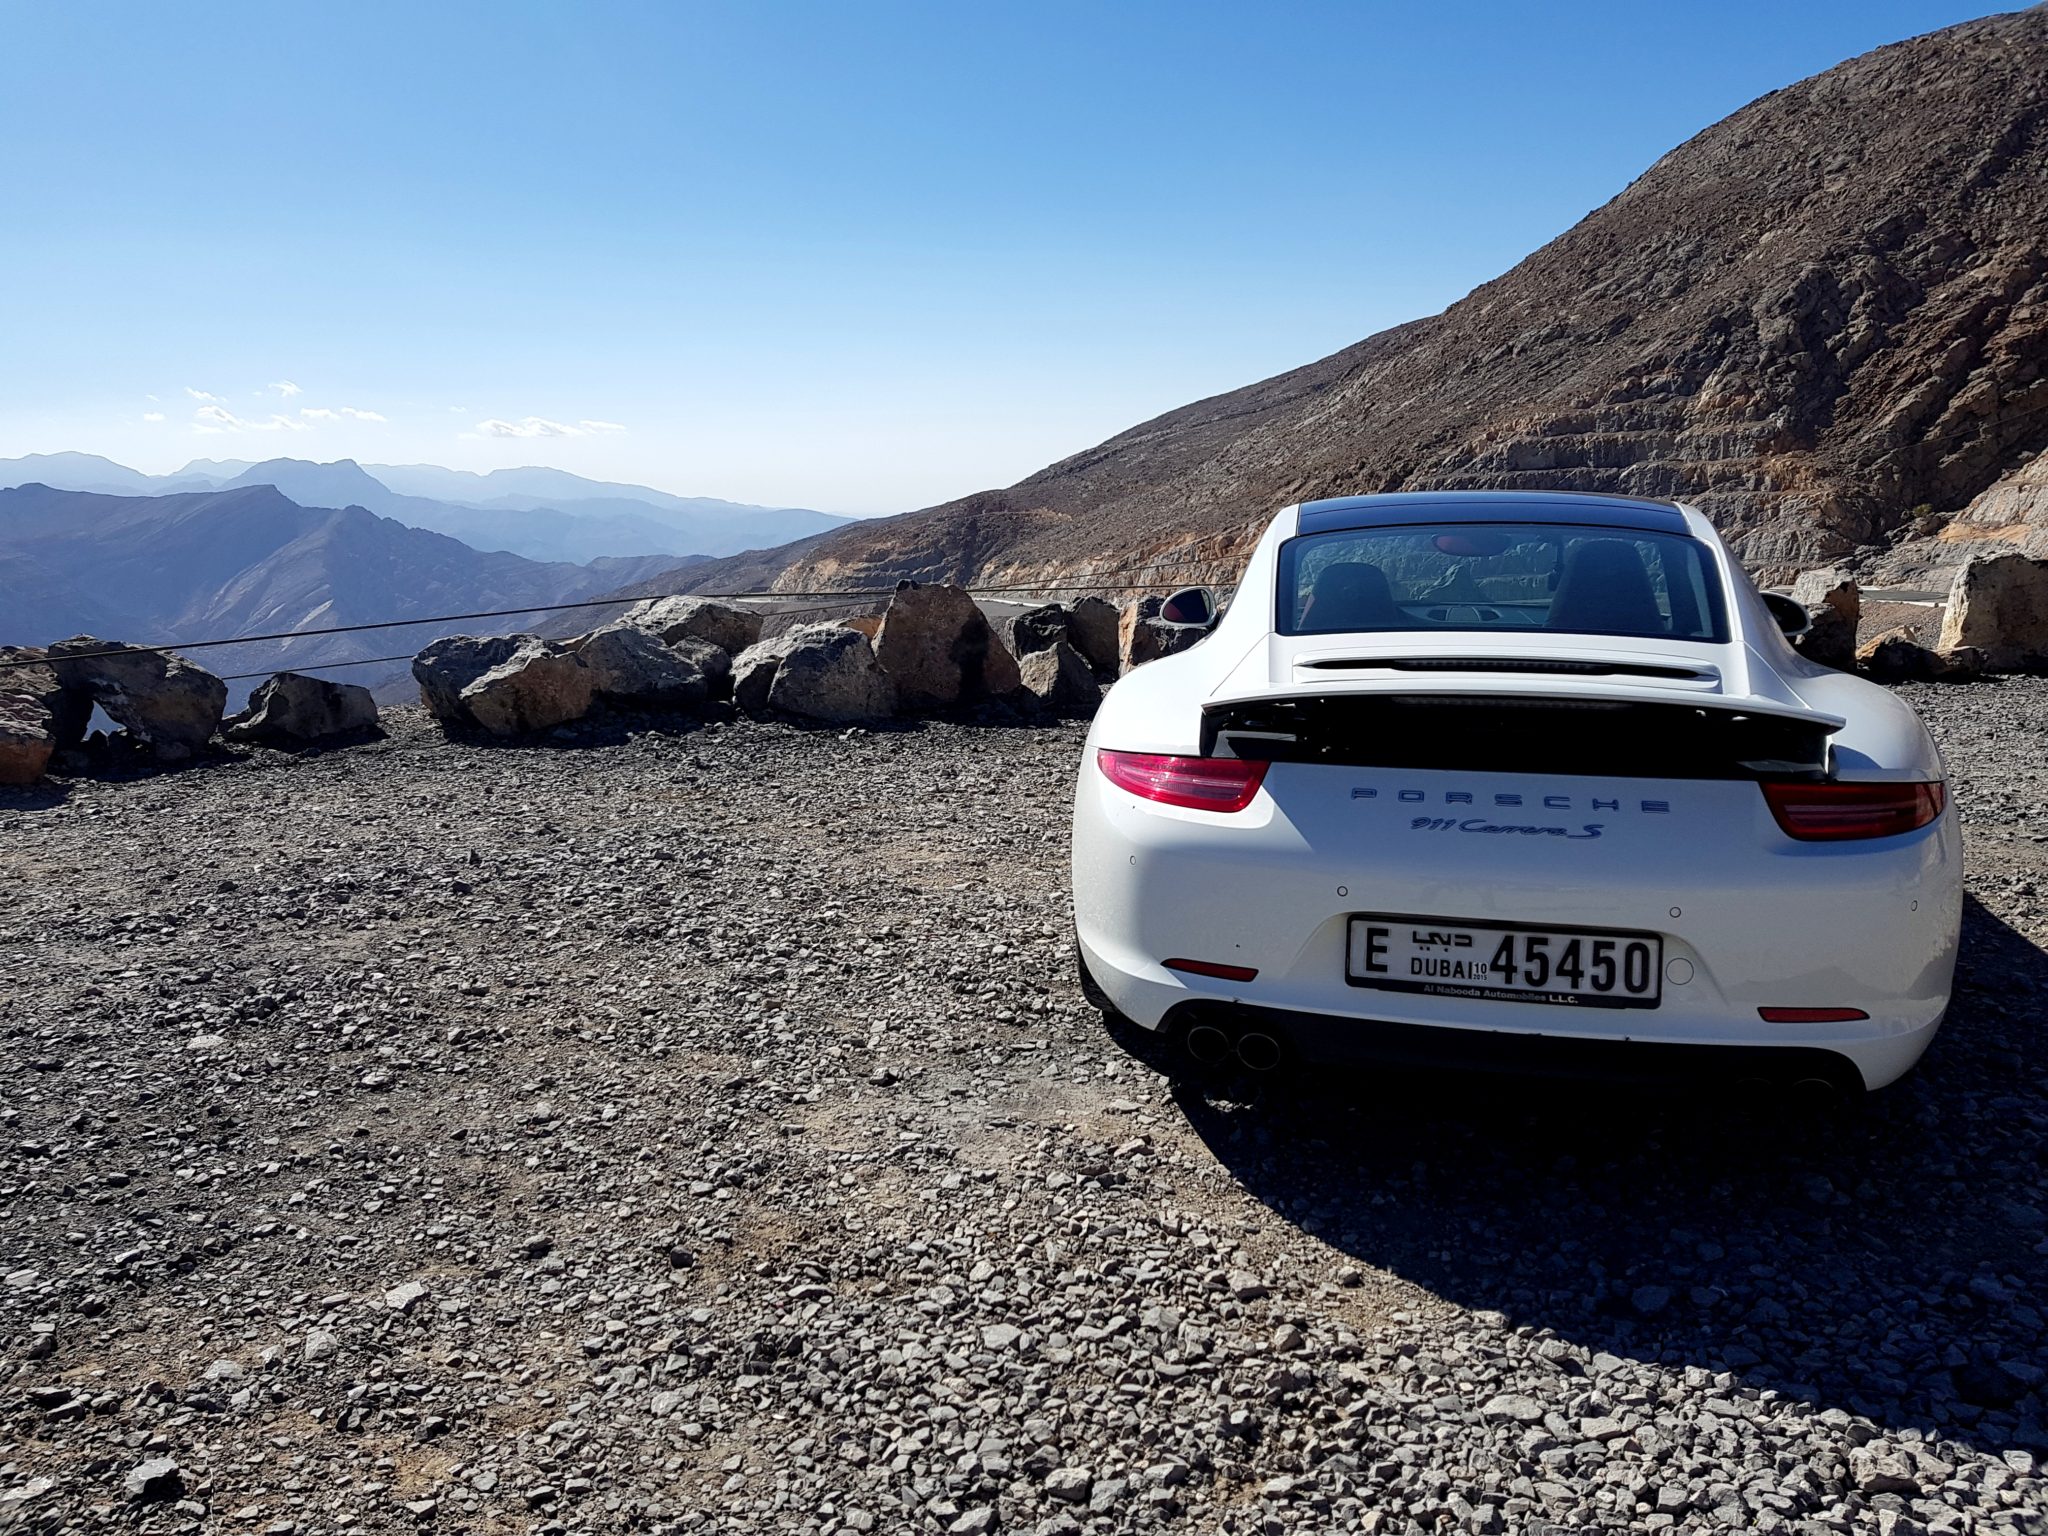 A Porsche on a Desert Mountain